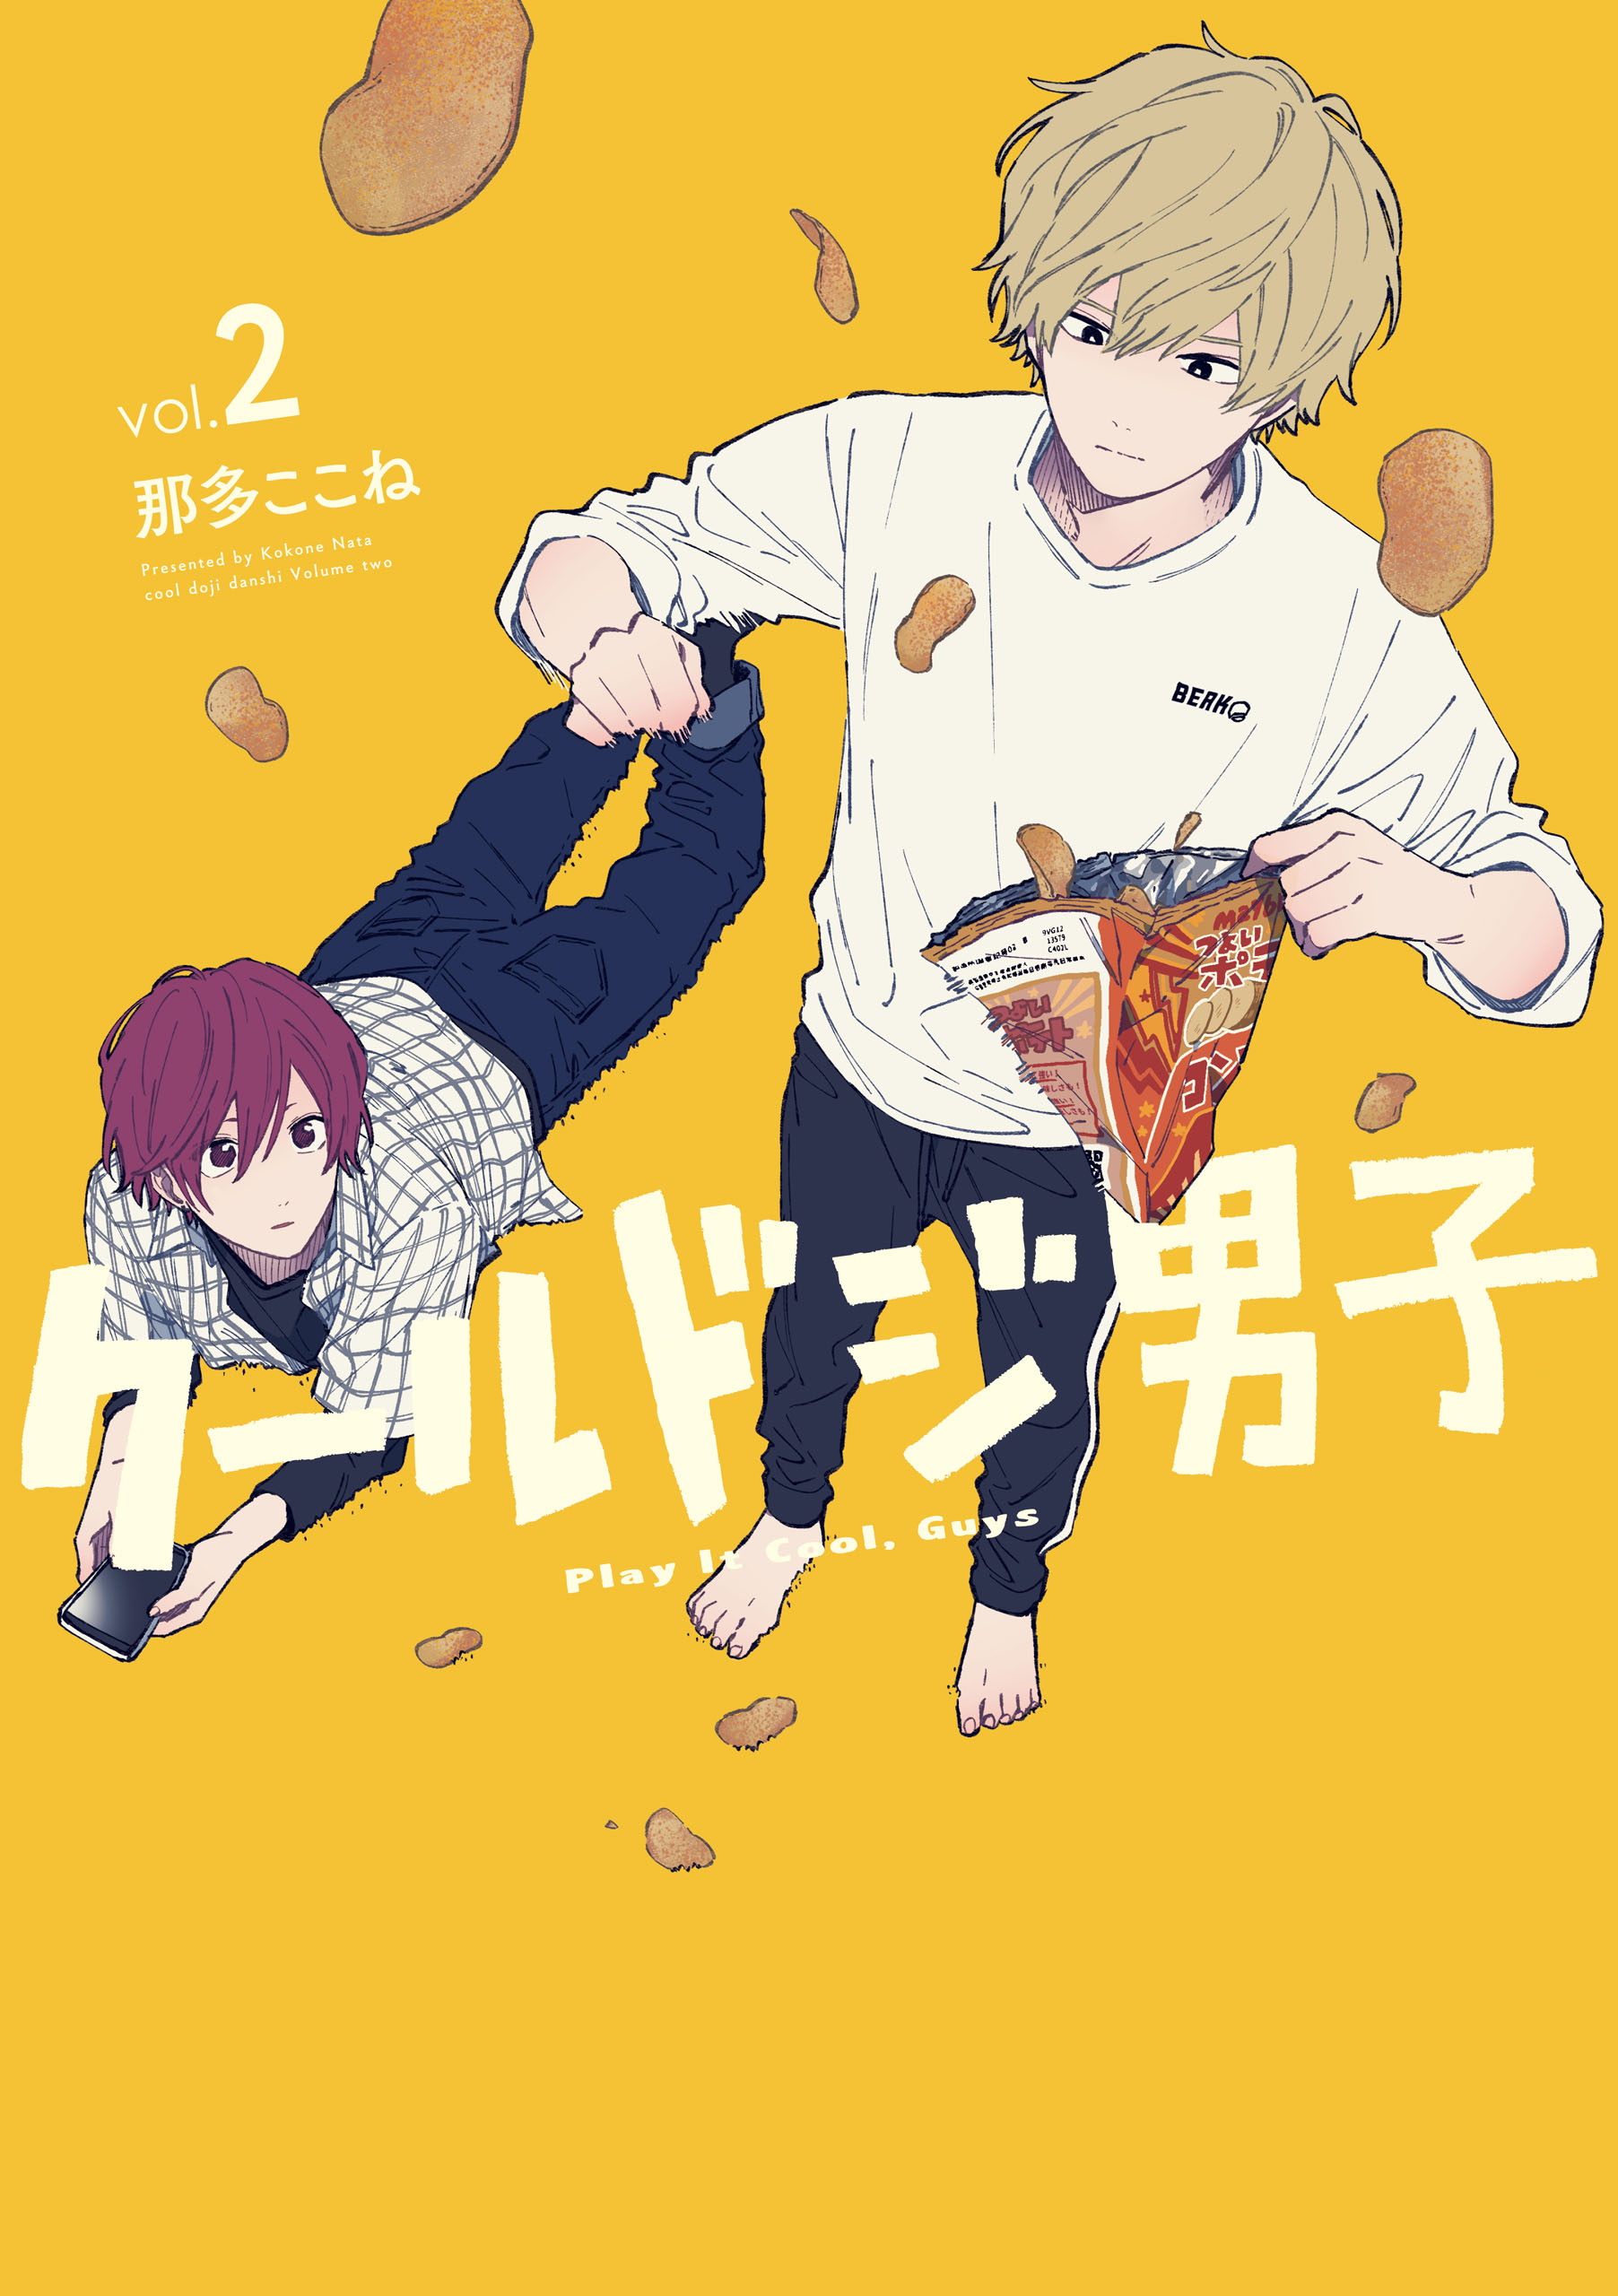 ハズキ 🍀 on X: Nata Kokone's manga Cool Doji Danshi to gets drama  adaptation by TV Tokyo in April. A heart-warming daily life story of cool  but clumsy boys who develop friendships.